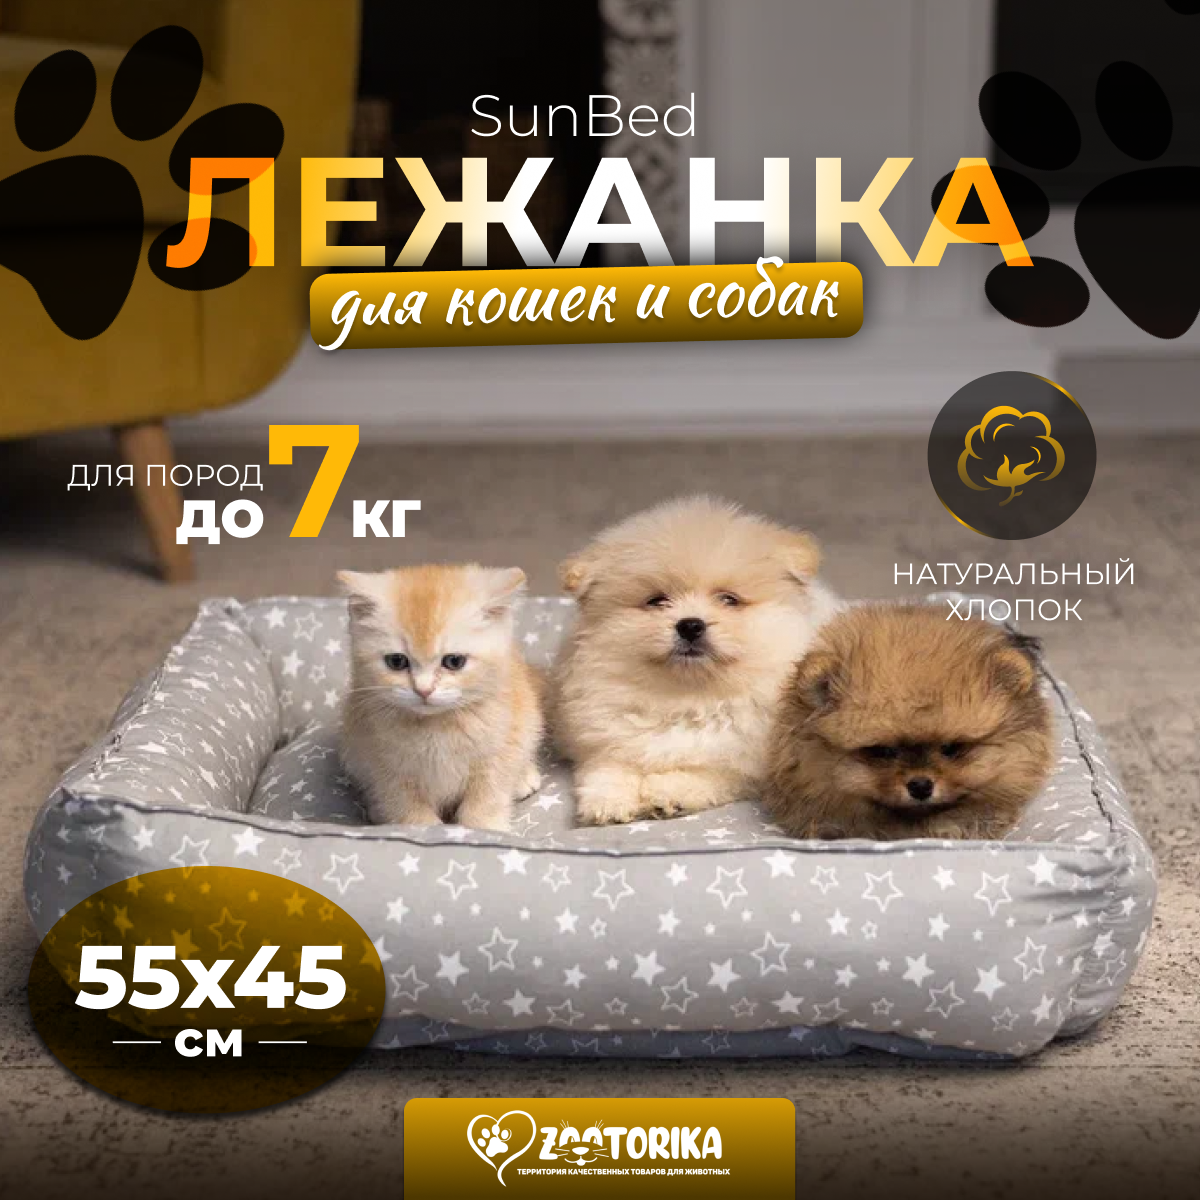 Лежанка для кошек и собак SunBed прямоугольная "Звездопад", серая, 55х45 / Лежак для животных мелких и средних пород